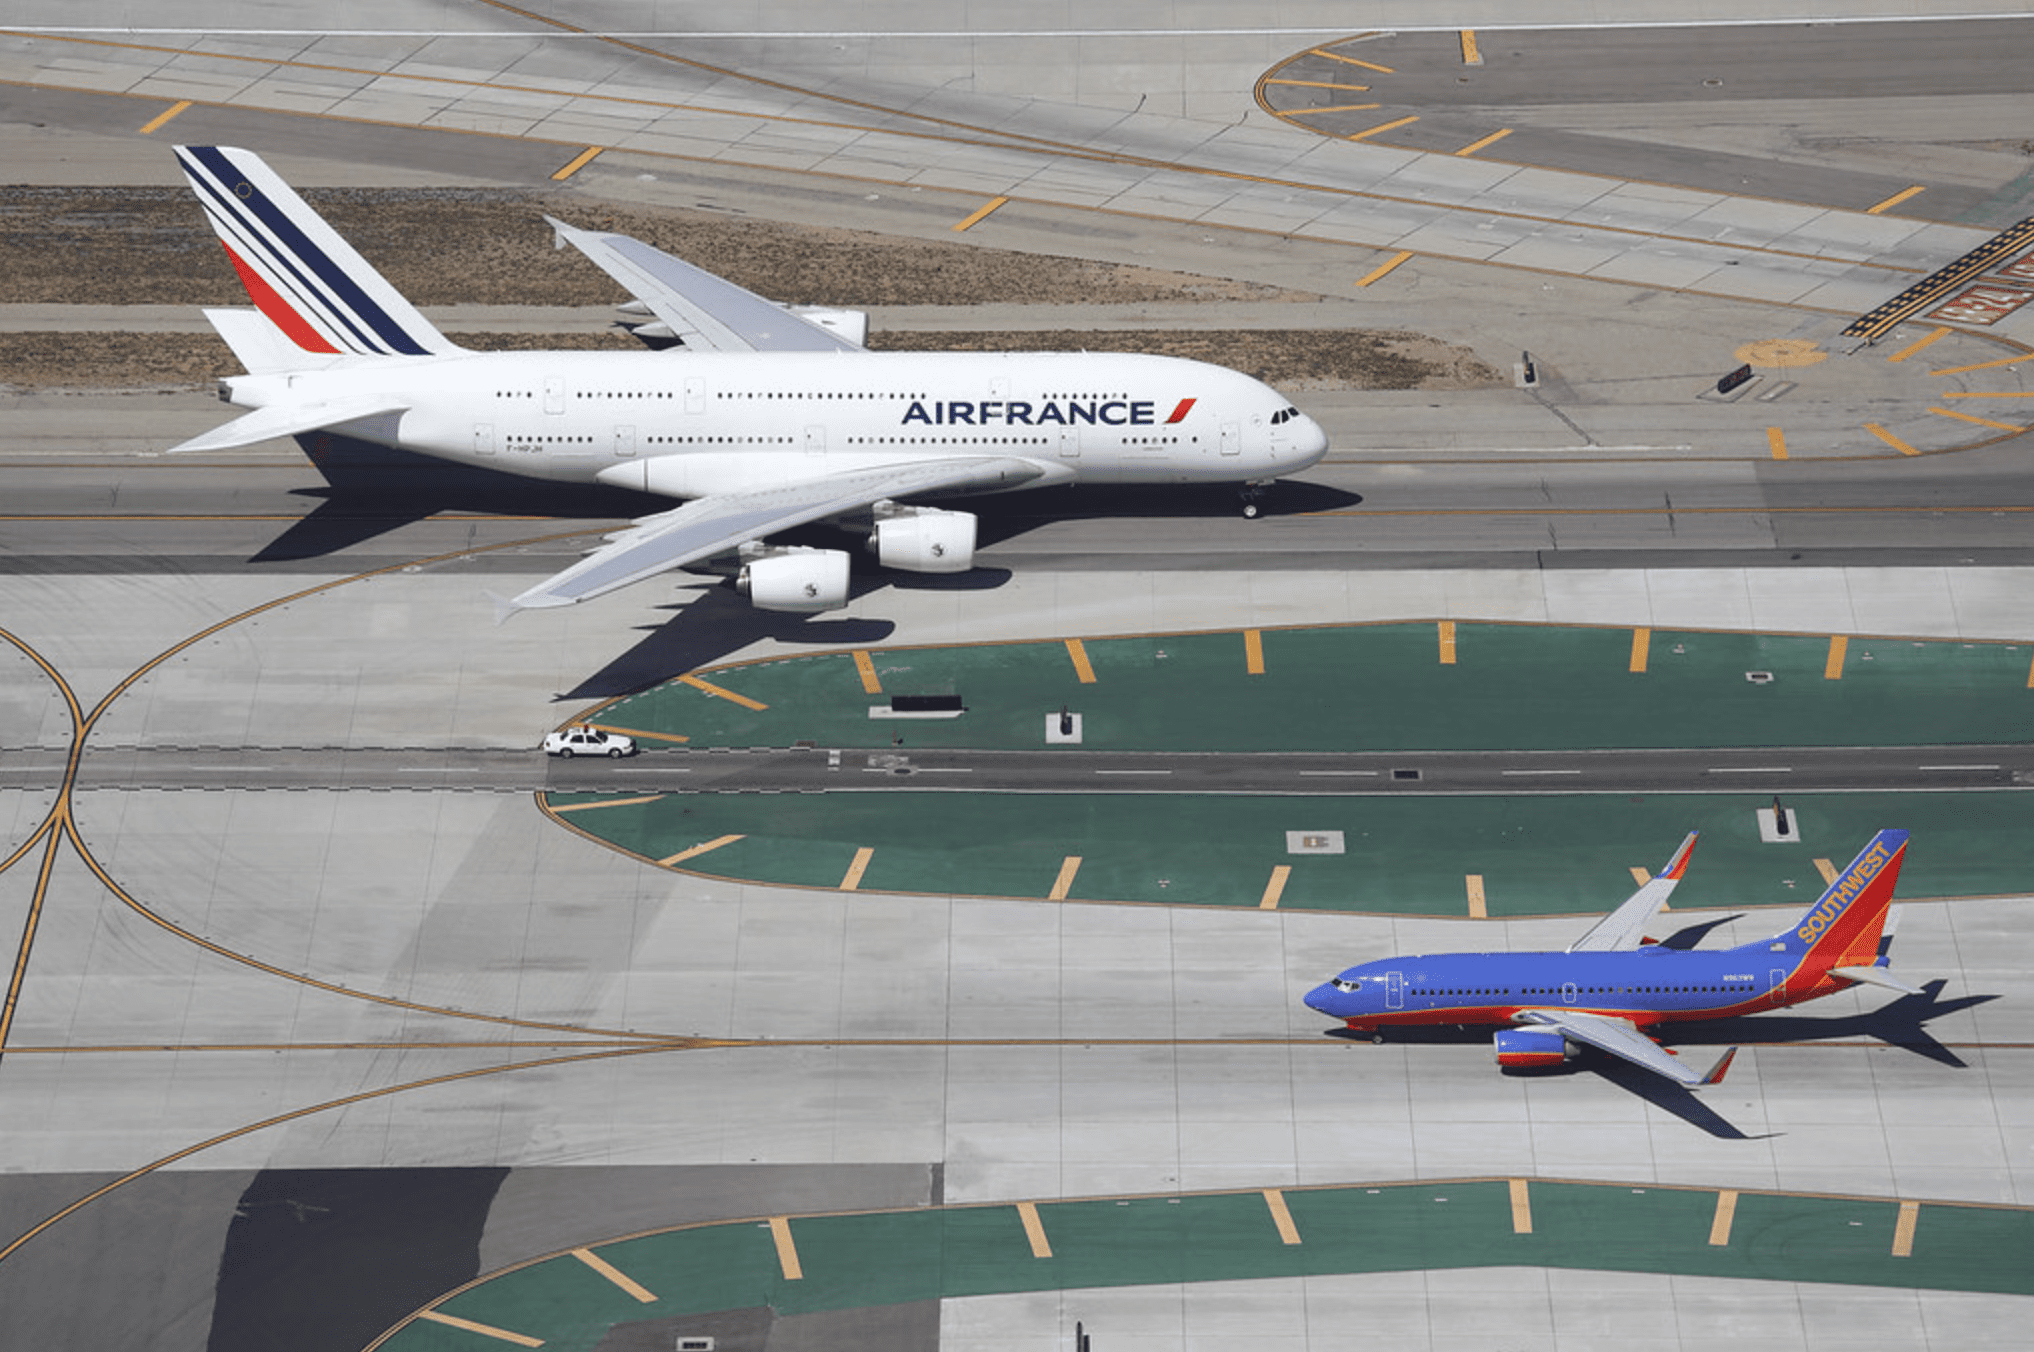 Máy bay 2 tầng A380 của Air France chạy ngược chiều Boeing 737-700 của Southwest Airlines trên đường băng sân bay quốc tế Los Angeles, Mỹ. Để tưởng tượng về kích thước thực của máy bay, hãy so sánh với chiếc ôtô Ford Crown Victoria ở giữa. Ảnh: Steve Arthur/Flickr